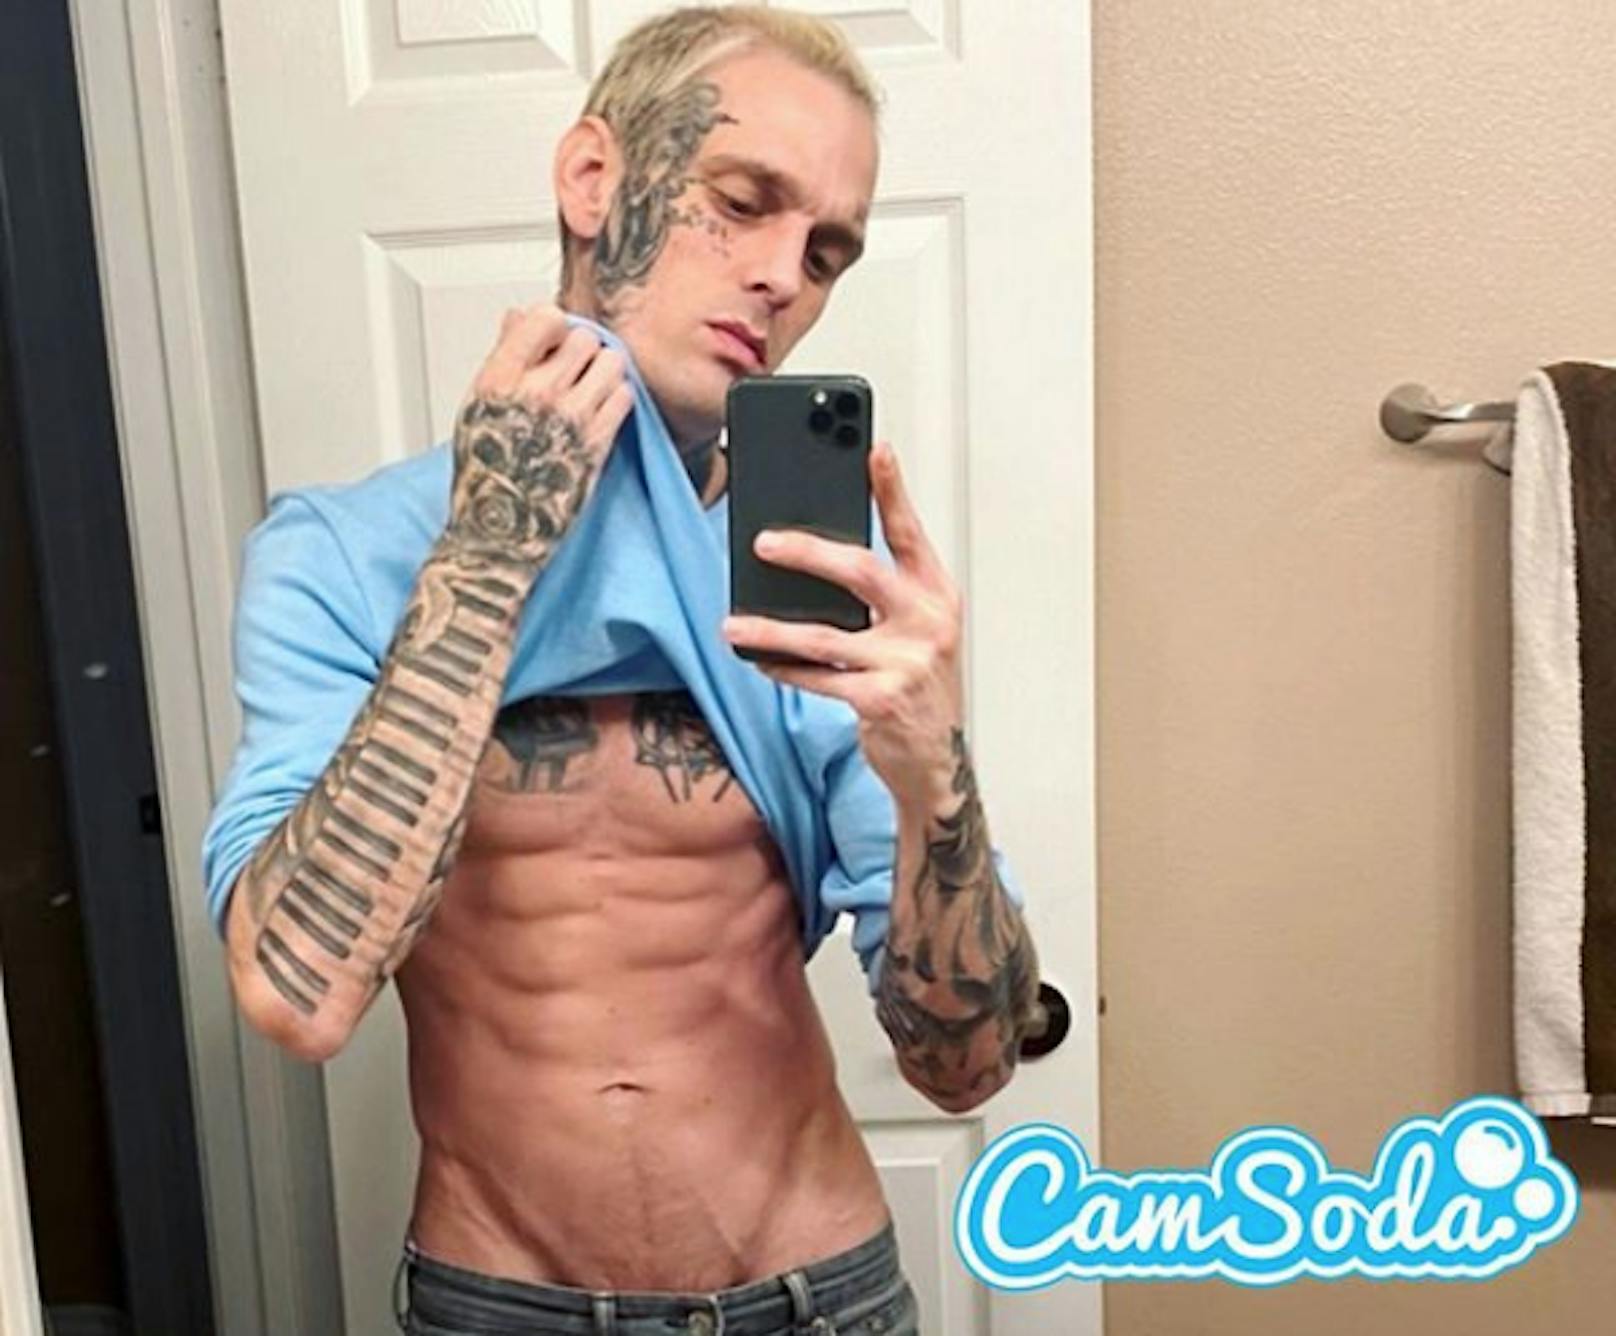 Sänger <strong>Aaron Carter</strong> rührt auf Social Media die Werbetrommel für sein Schmuddel-Debüt auf der Sex-Website "CamSoda".